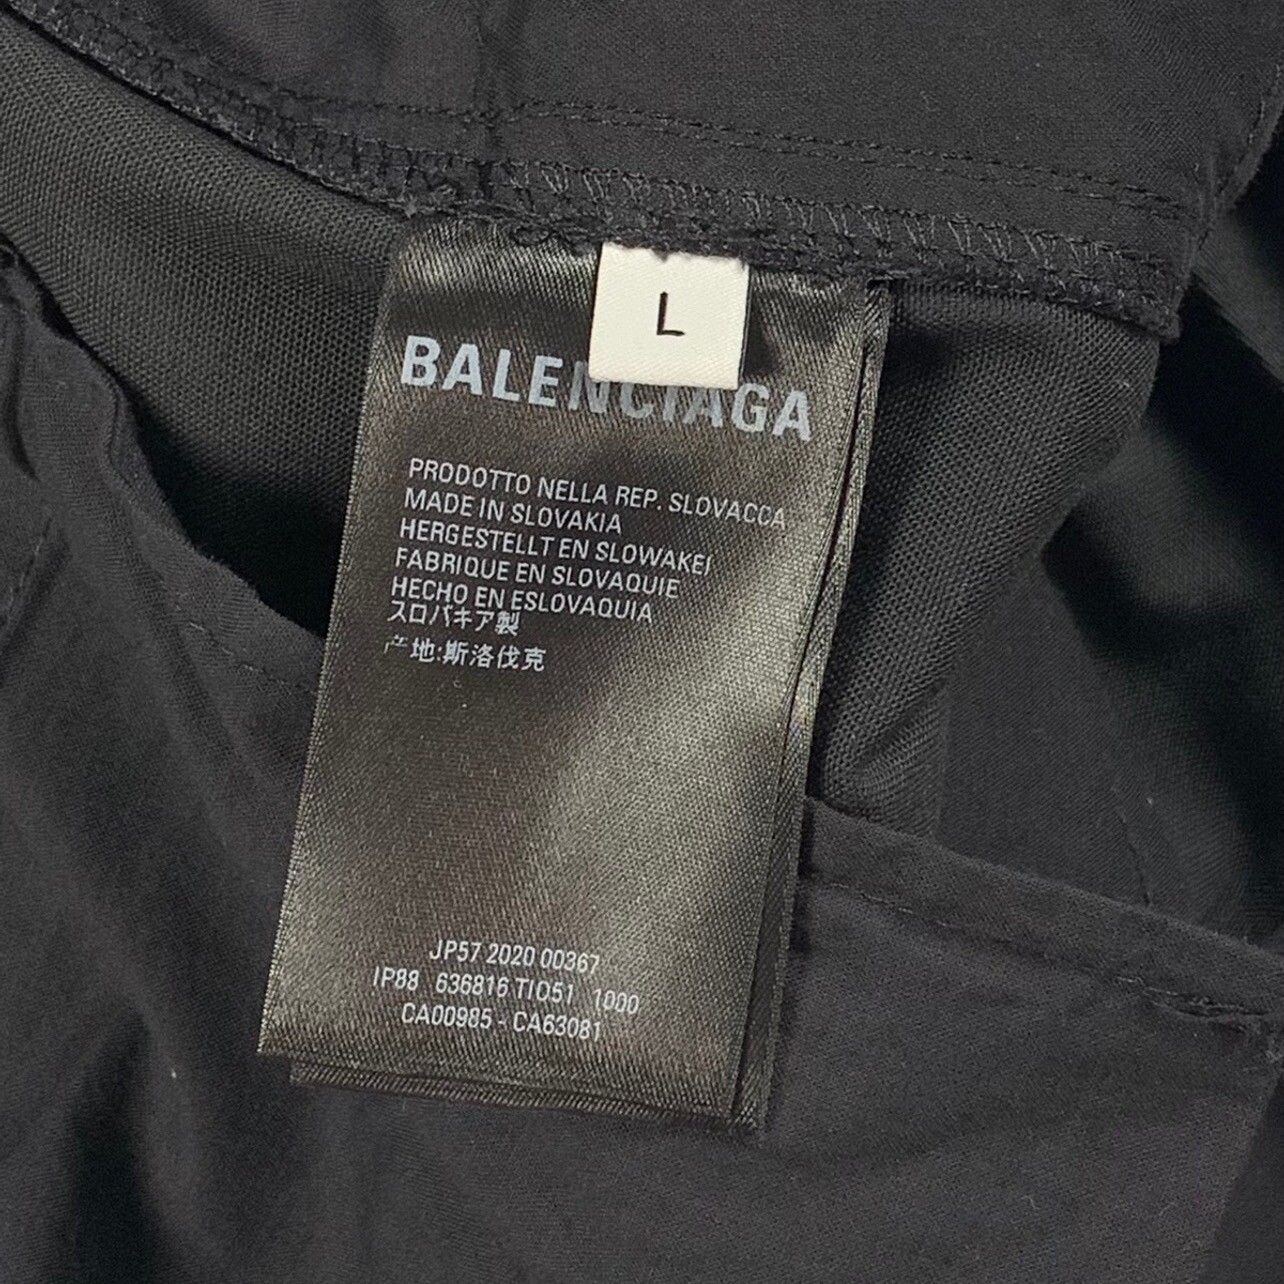 Balenciaga Balenciaga Multi-Pocket Cargo Pants Size US 34 / EU 50 - 5 Thumbnail